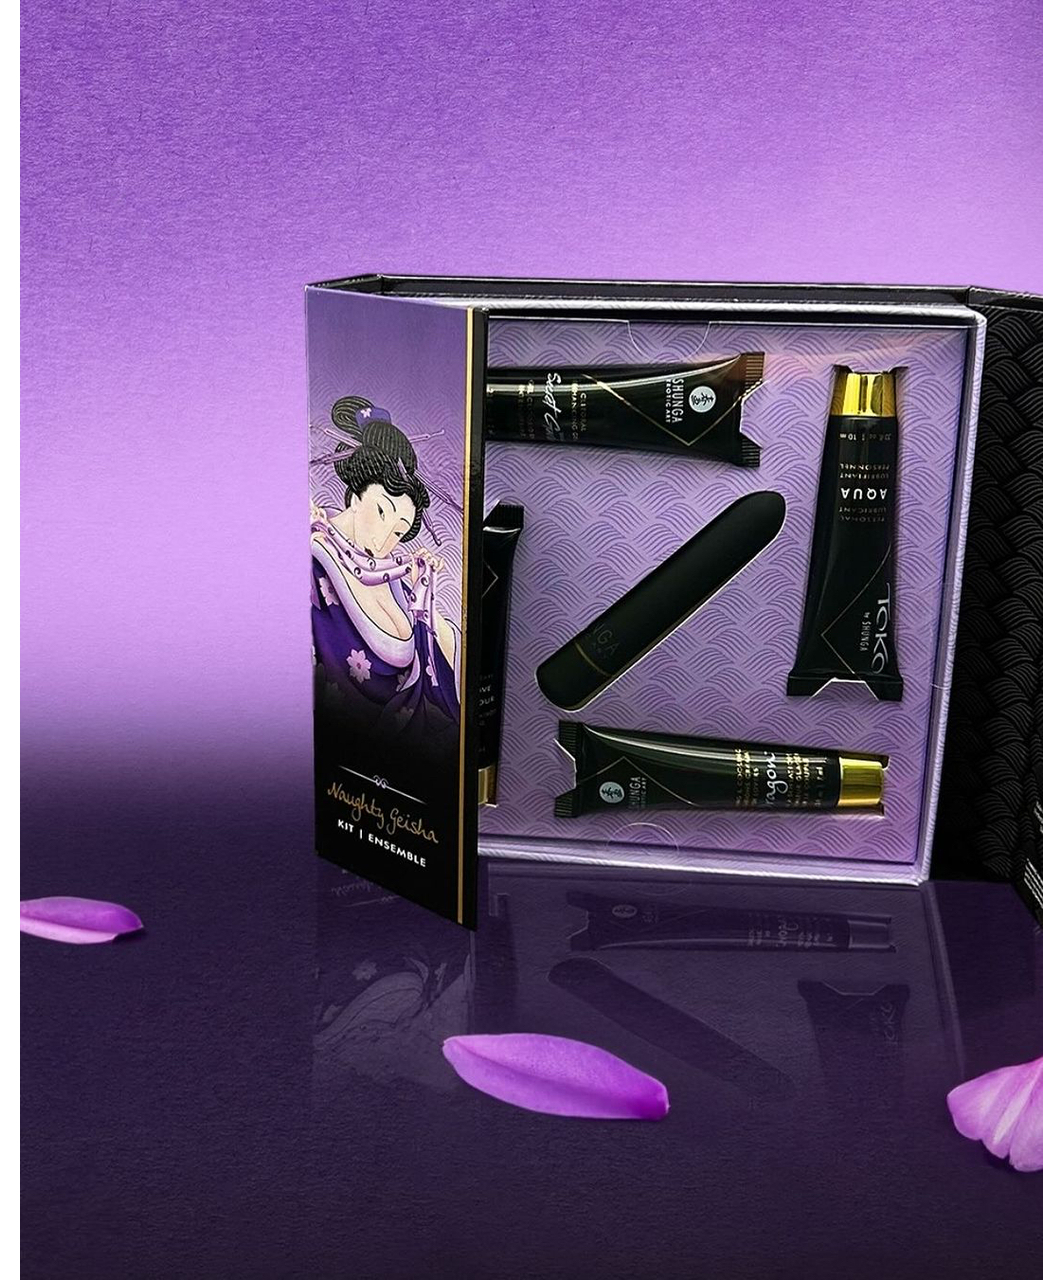 Shunga Naughty Geisha intīmās kosmētikas komplekts + vibrators